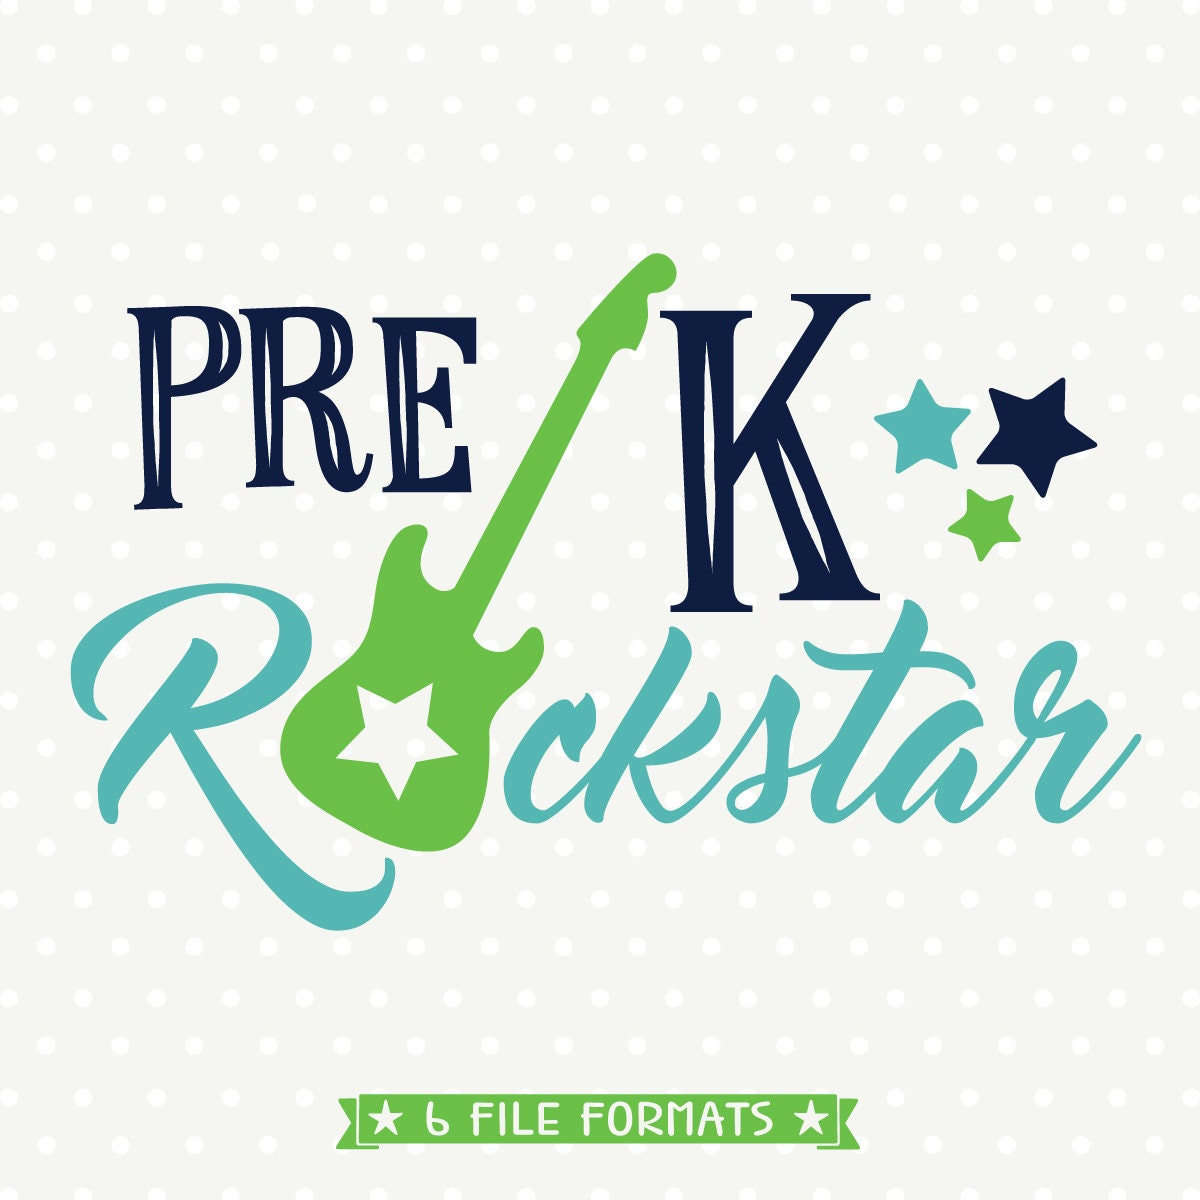 Download First Day of School SVG design Pre K Rockstar SVG file Pre K